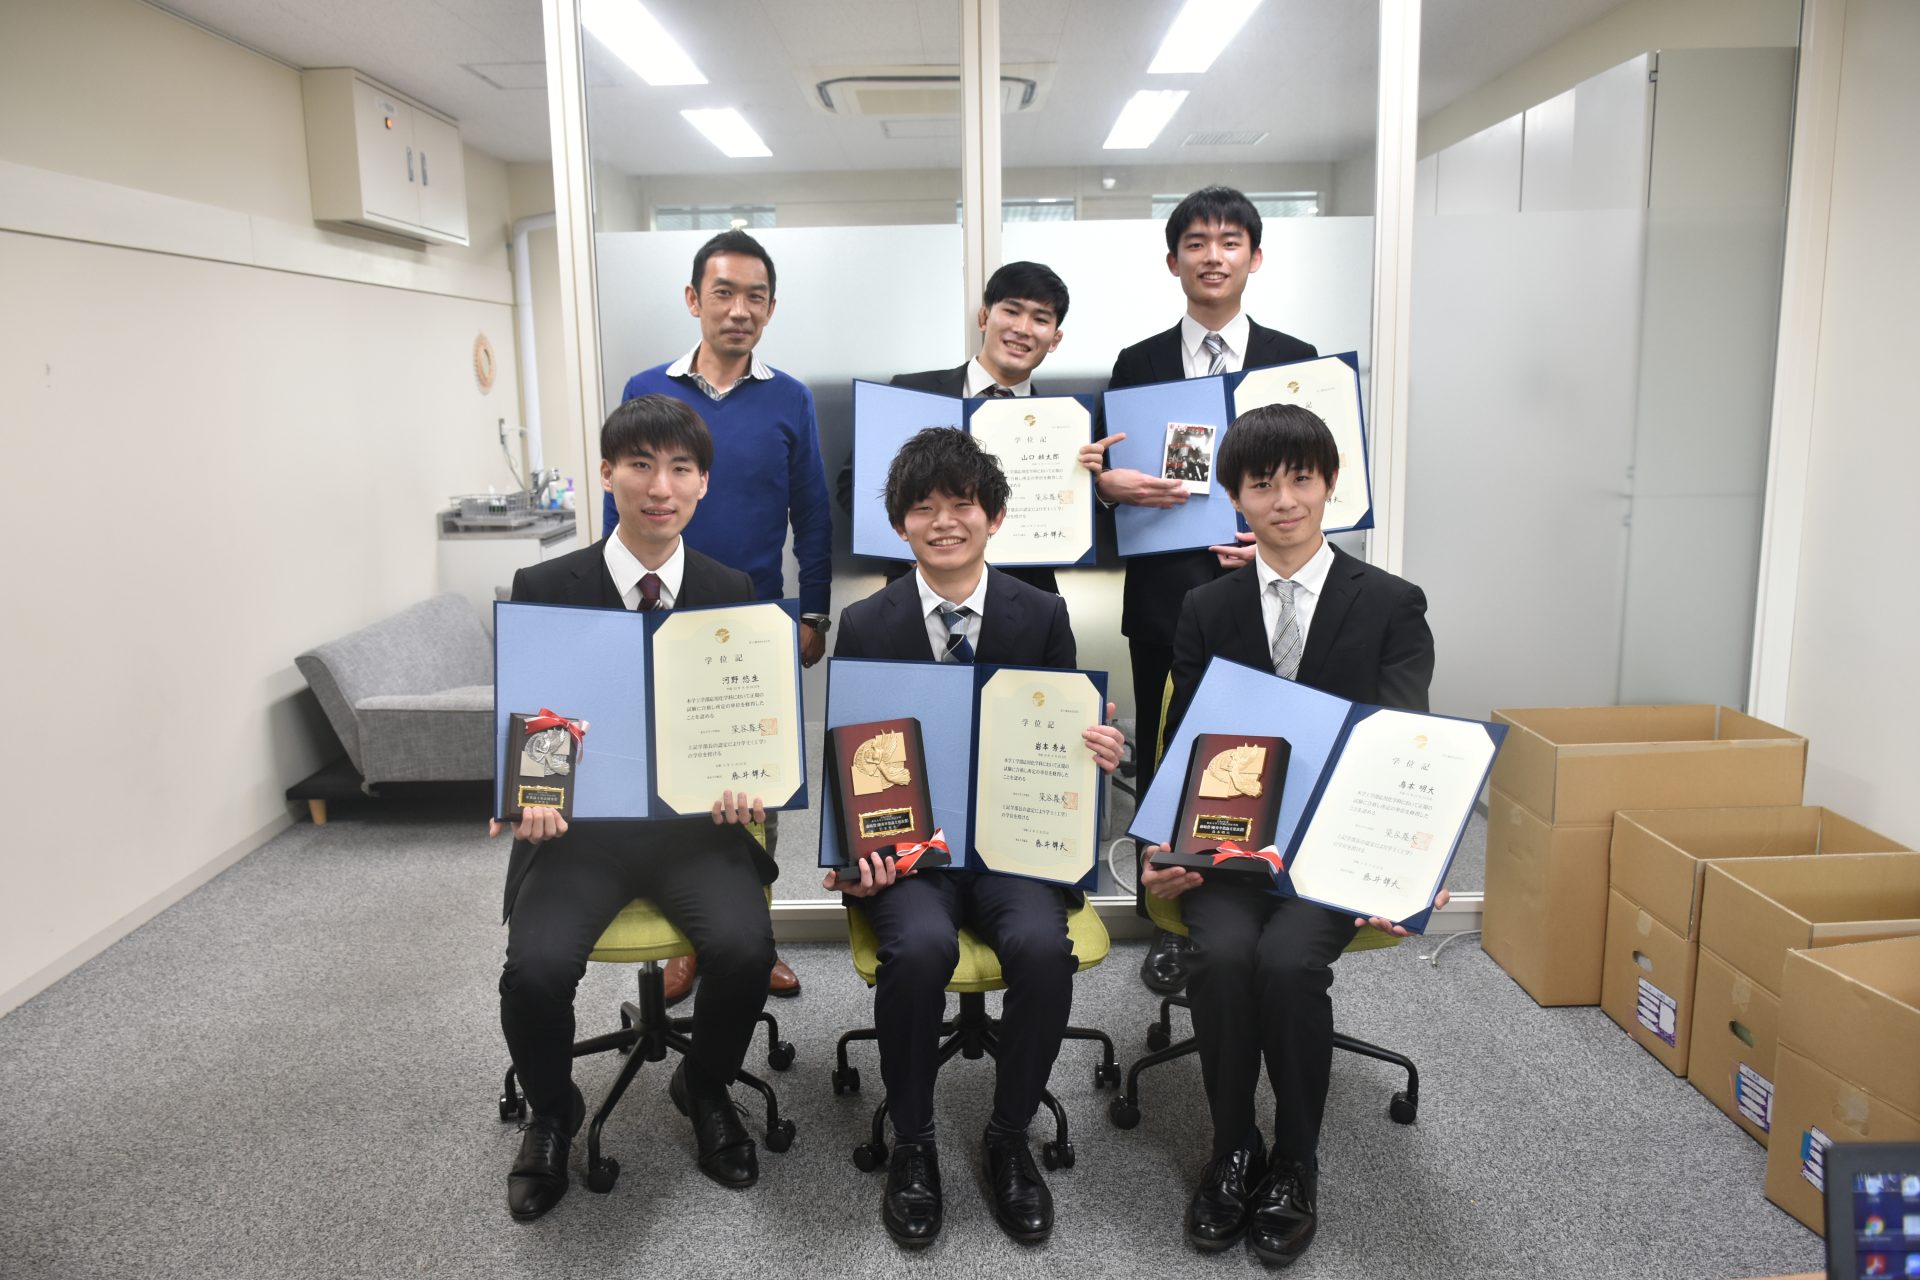 Torimoto, Iwamoto & Kono were awarded for their graduation thesis